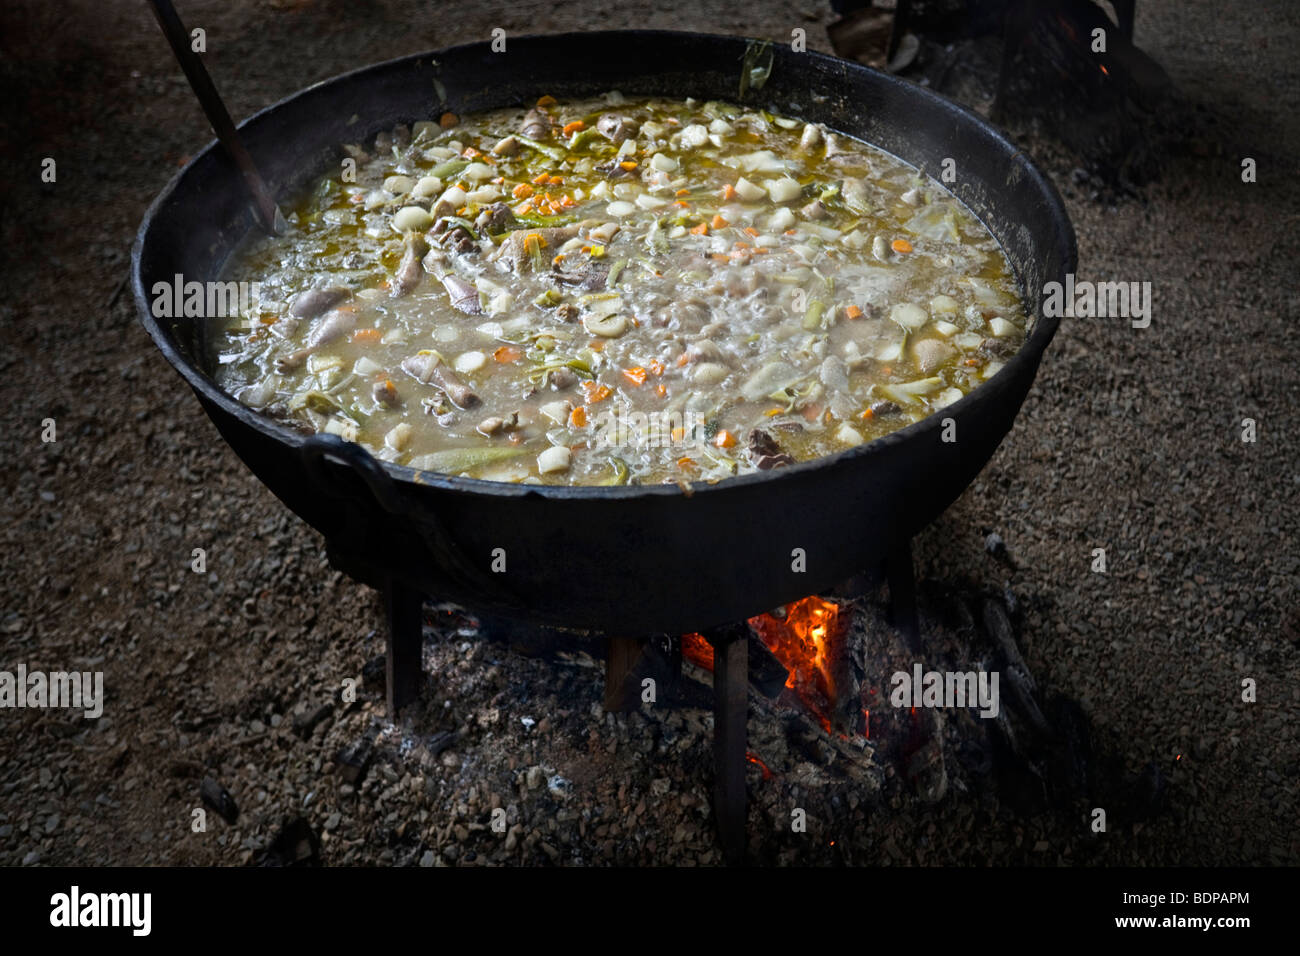 Wood fire cooking of a vegetable soup in a pot. Cuisson au feu de bois d'une soupe de légumes dans une marmite. Stock Photo